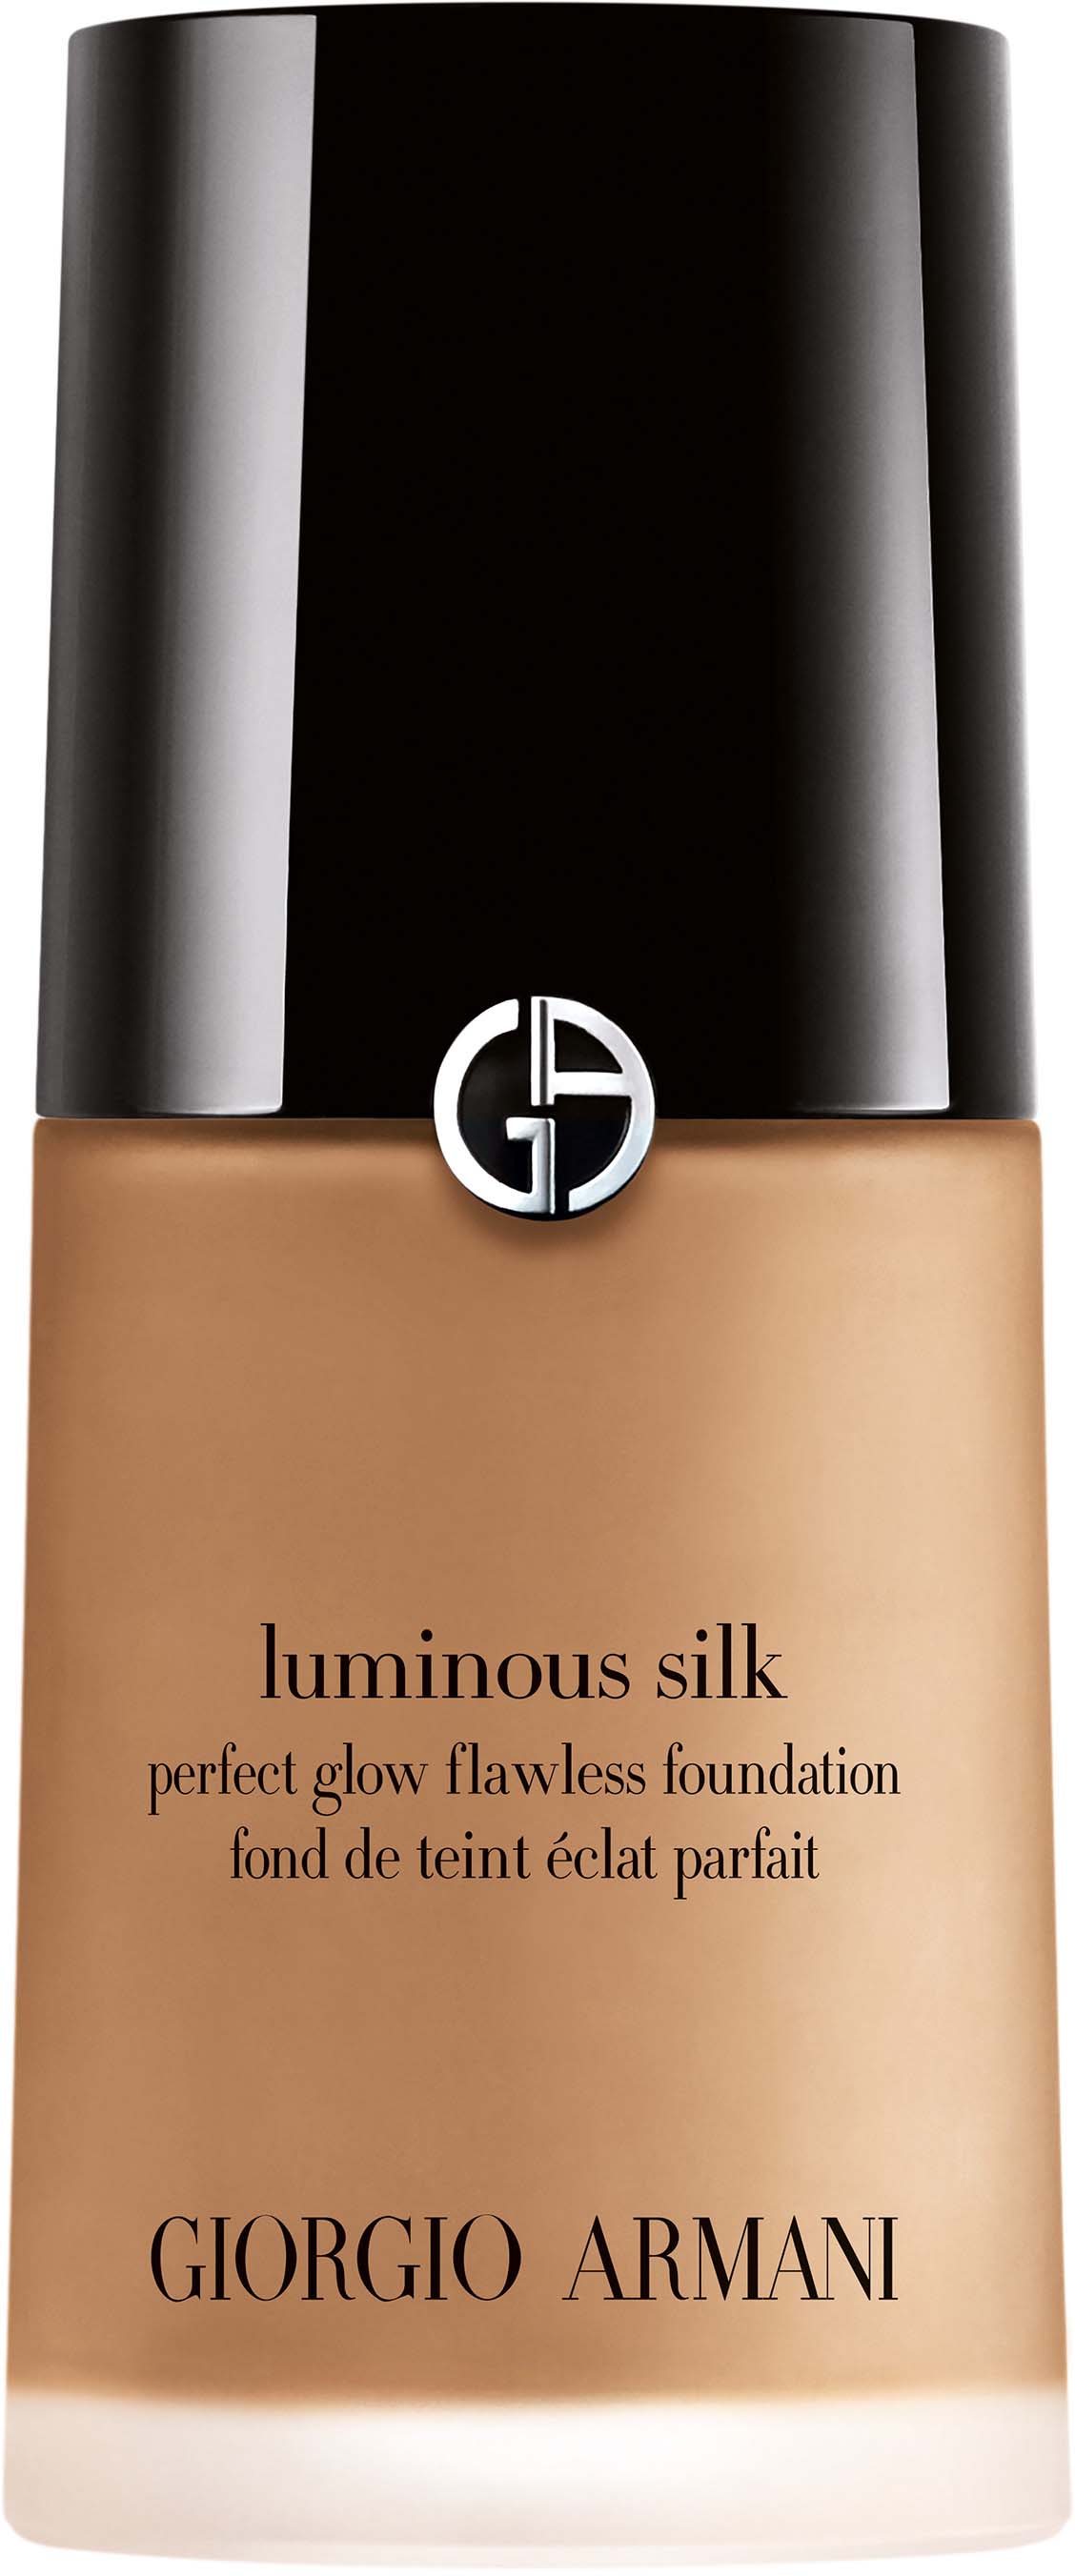 Luminous Silk Foundation - Glow Foundation - Armani Beauty